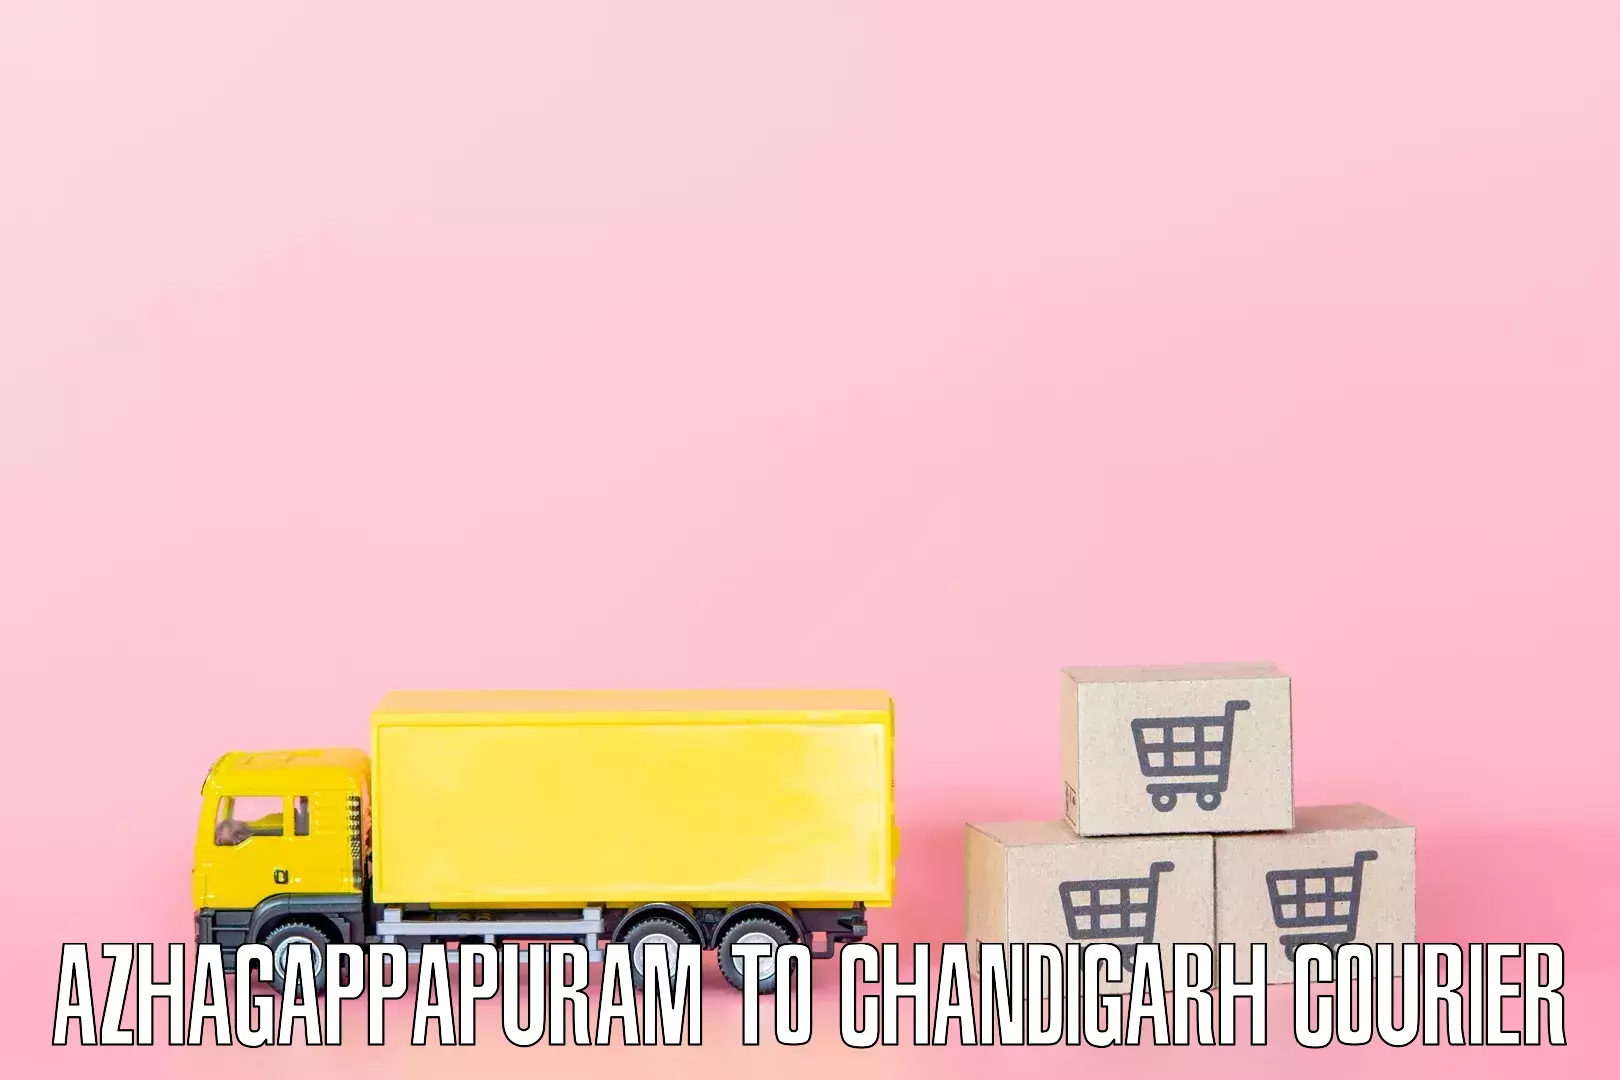 Efficient relocation services Azhagappapuram to Chandigarh